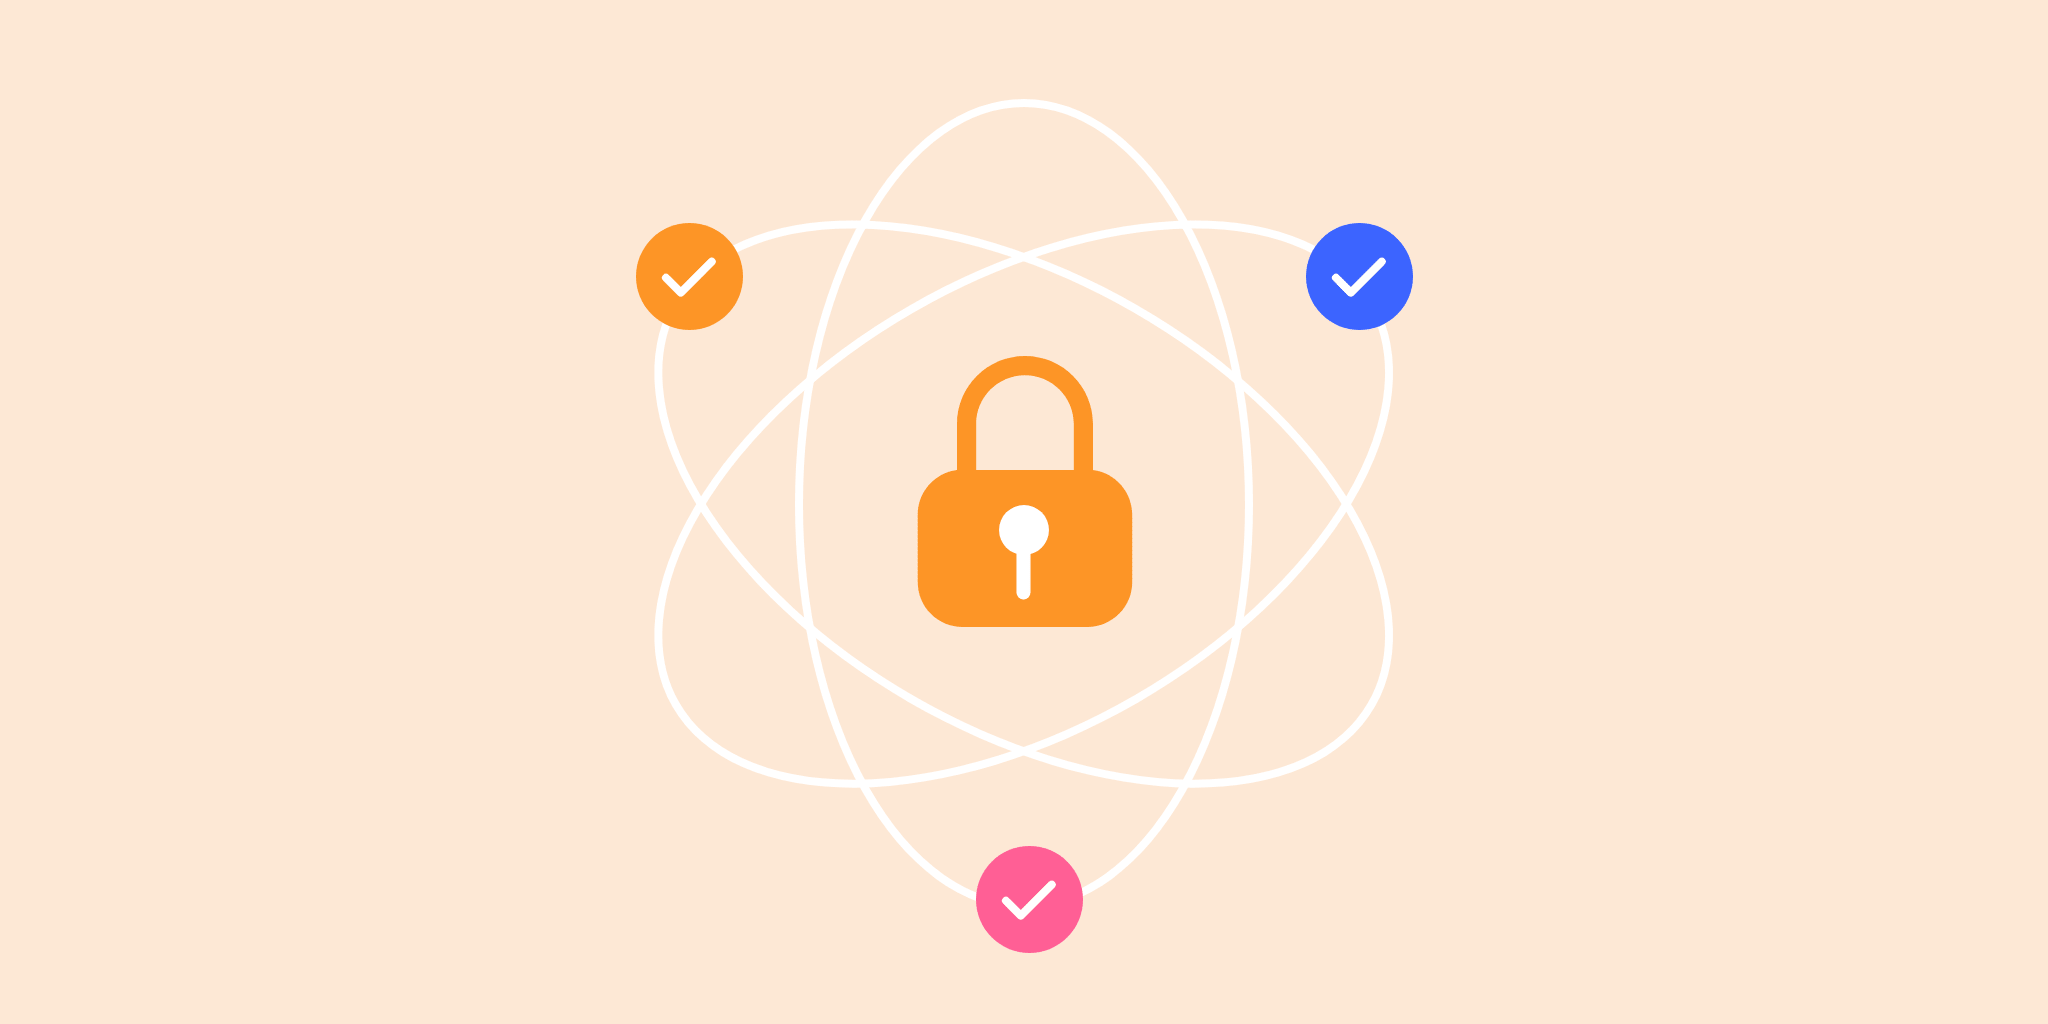 Bezpieczeństwo i ochrona Twoich danych to najistotniejszy aspekt naszej aplikacji do zarządzania projektami i współpracy w zespole.